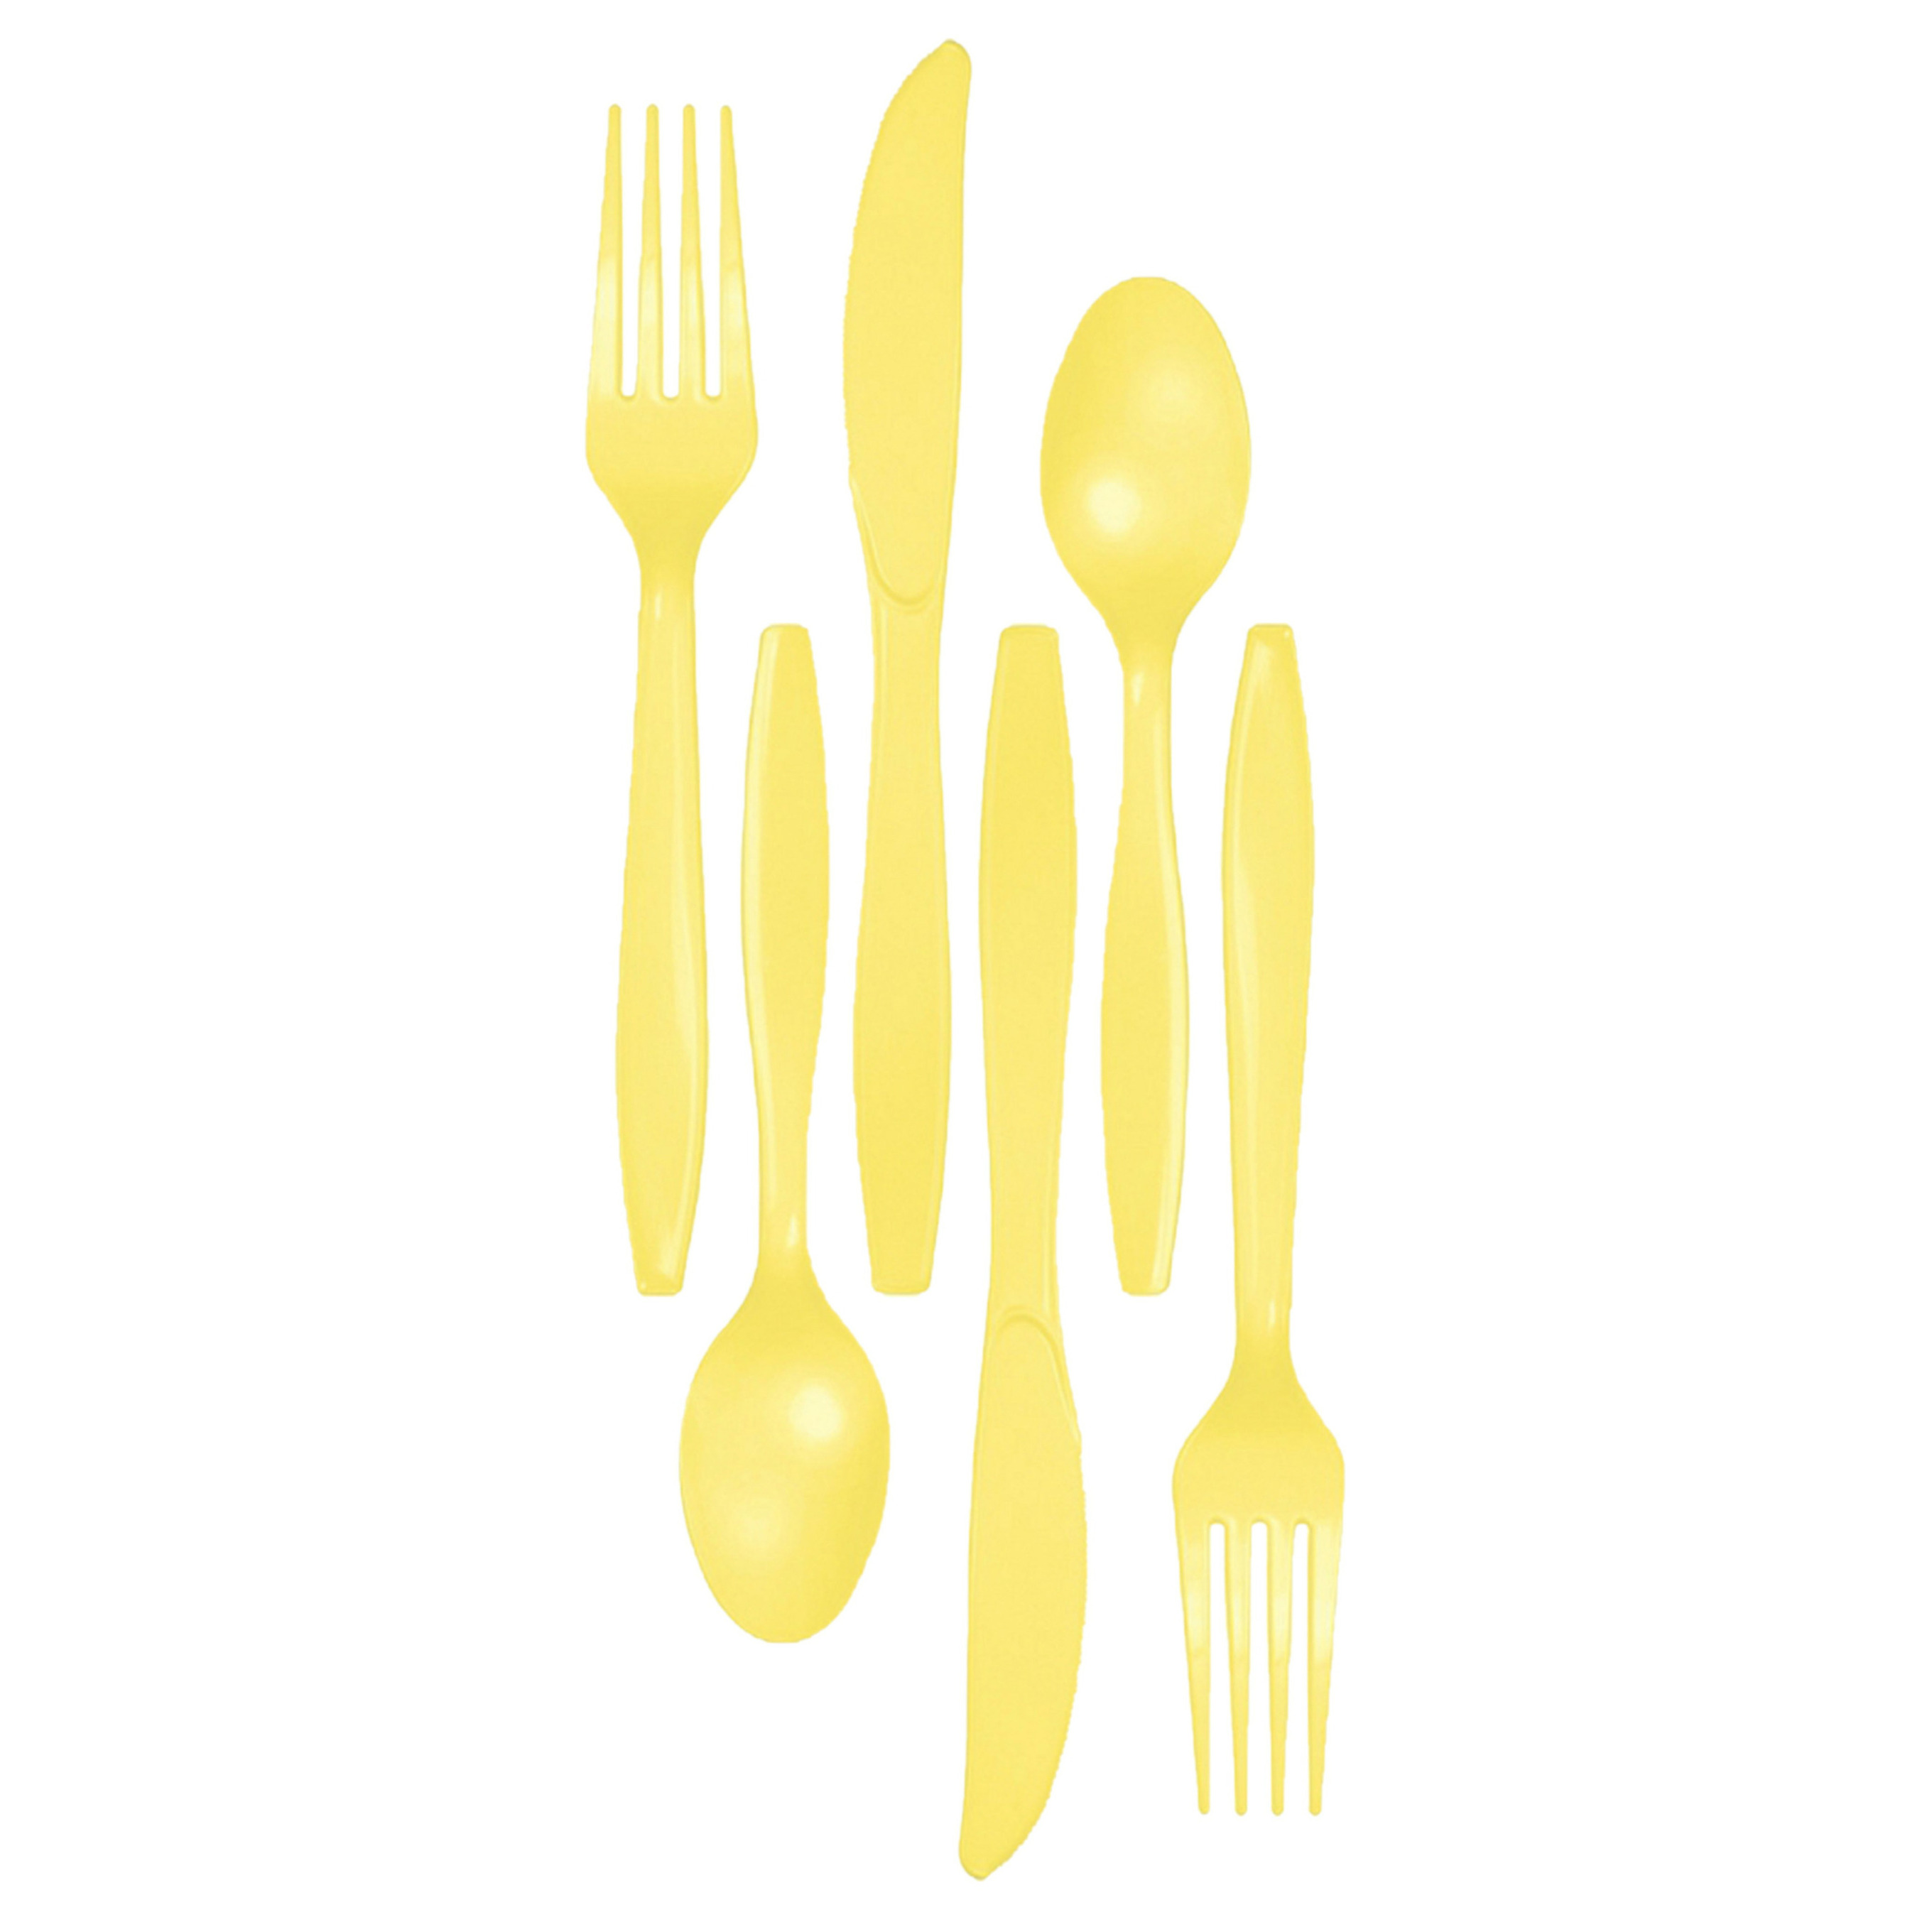 Kunststof bestek party-bbq setje 48x delig geel messen-vorken-lepels herbruikbaar